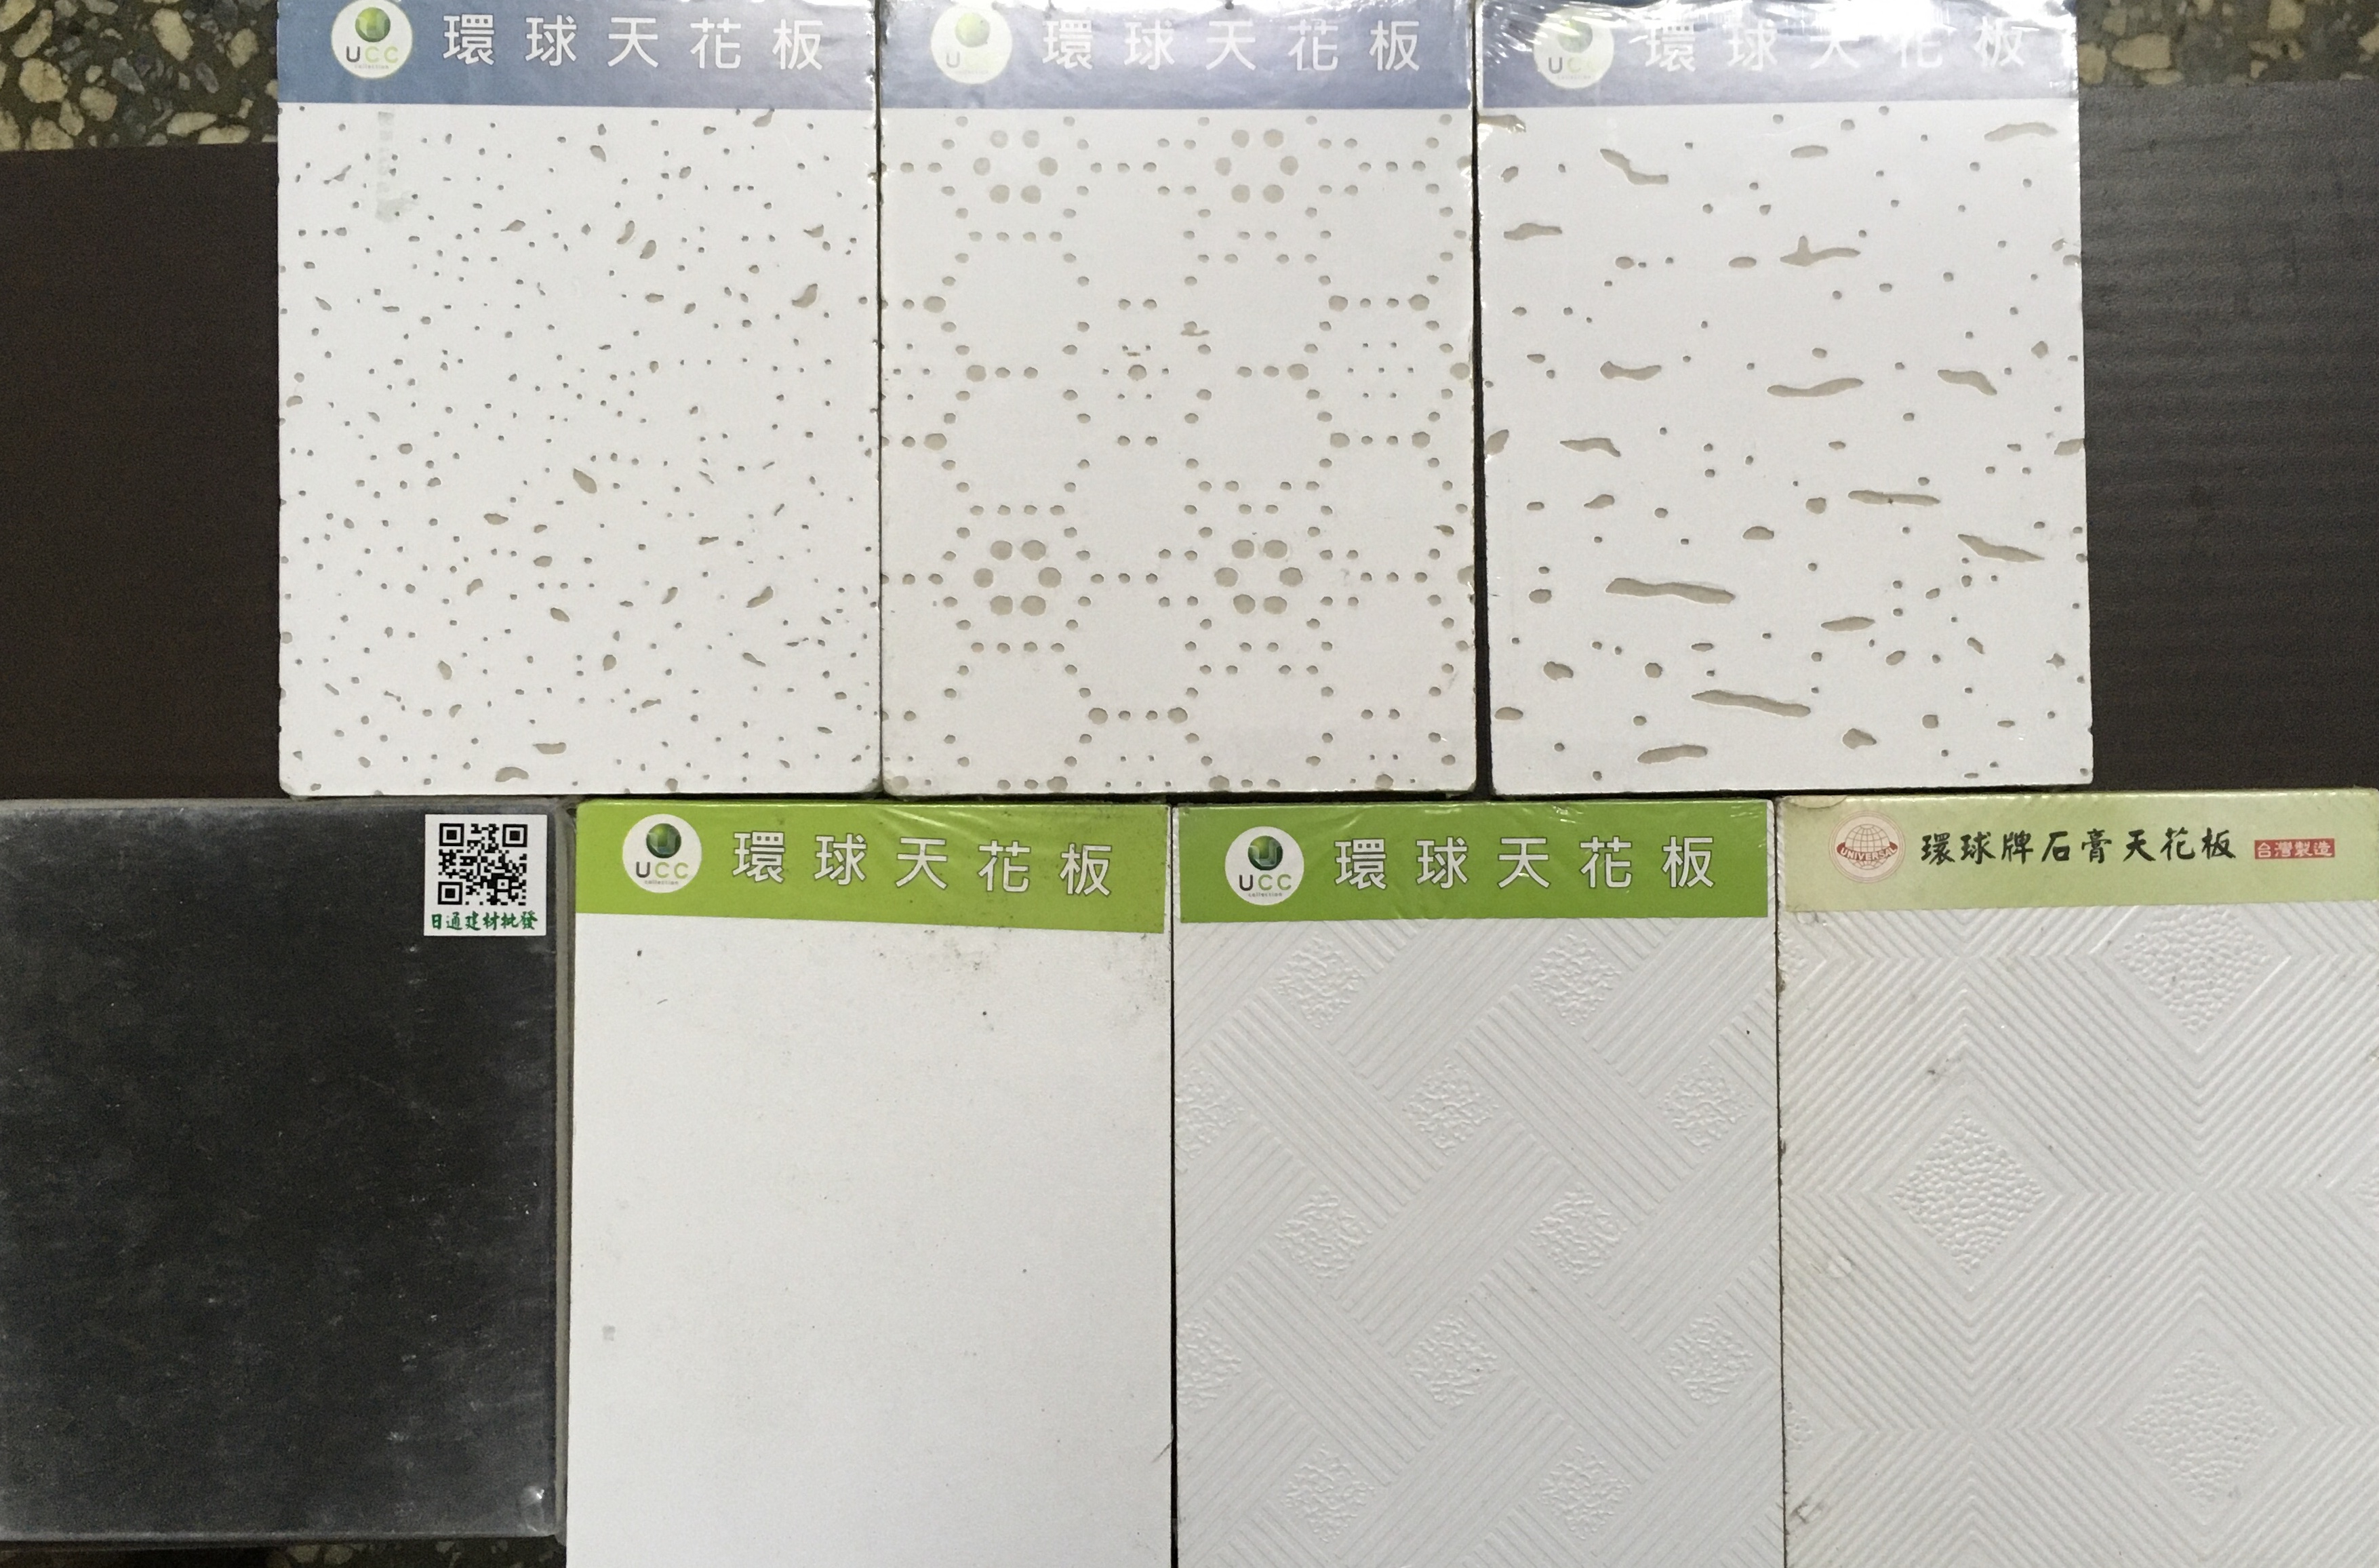 輕鋼架石膏板天花板(豹紋*針孔紋)(明架)2尺x2尺x9m/m/以箱算(一箱9片1坪)(可以綠建材標章)